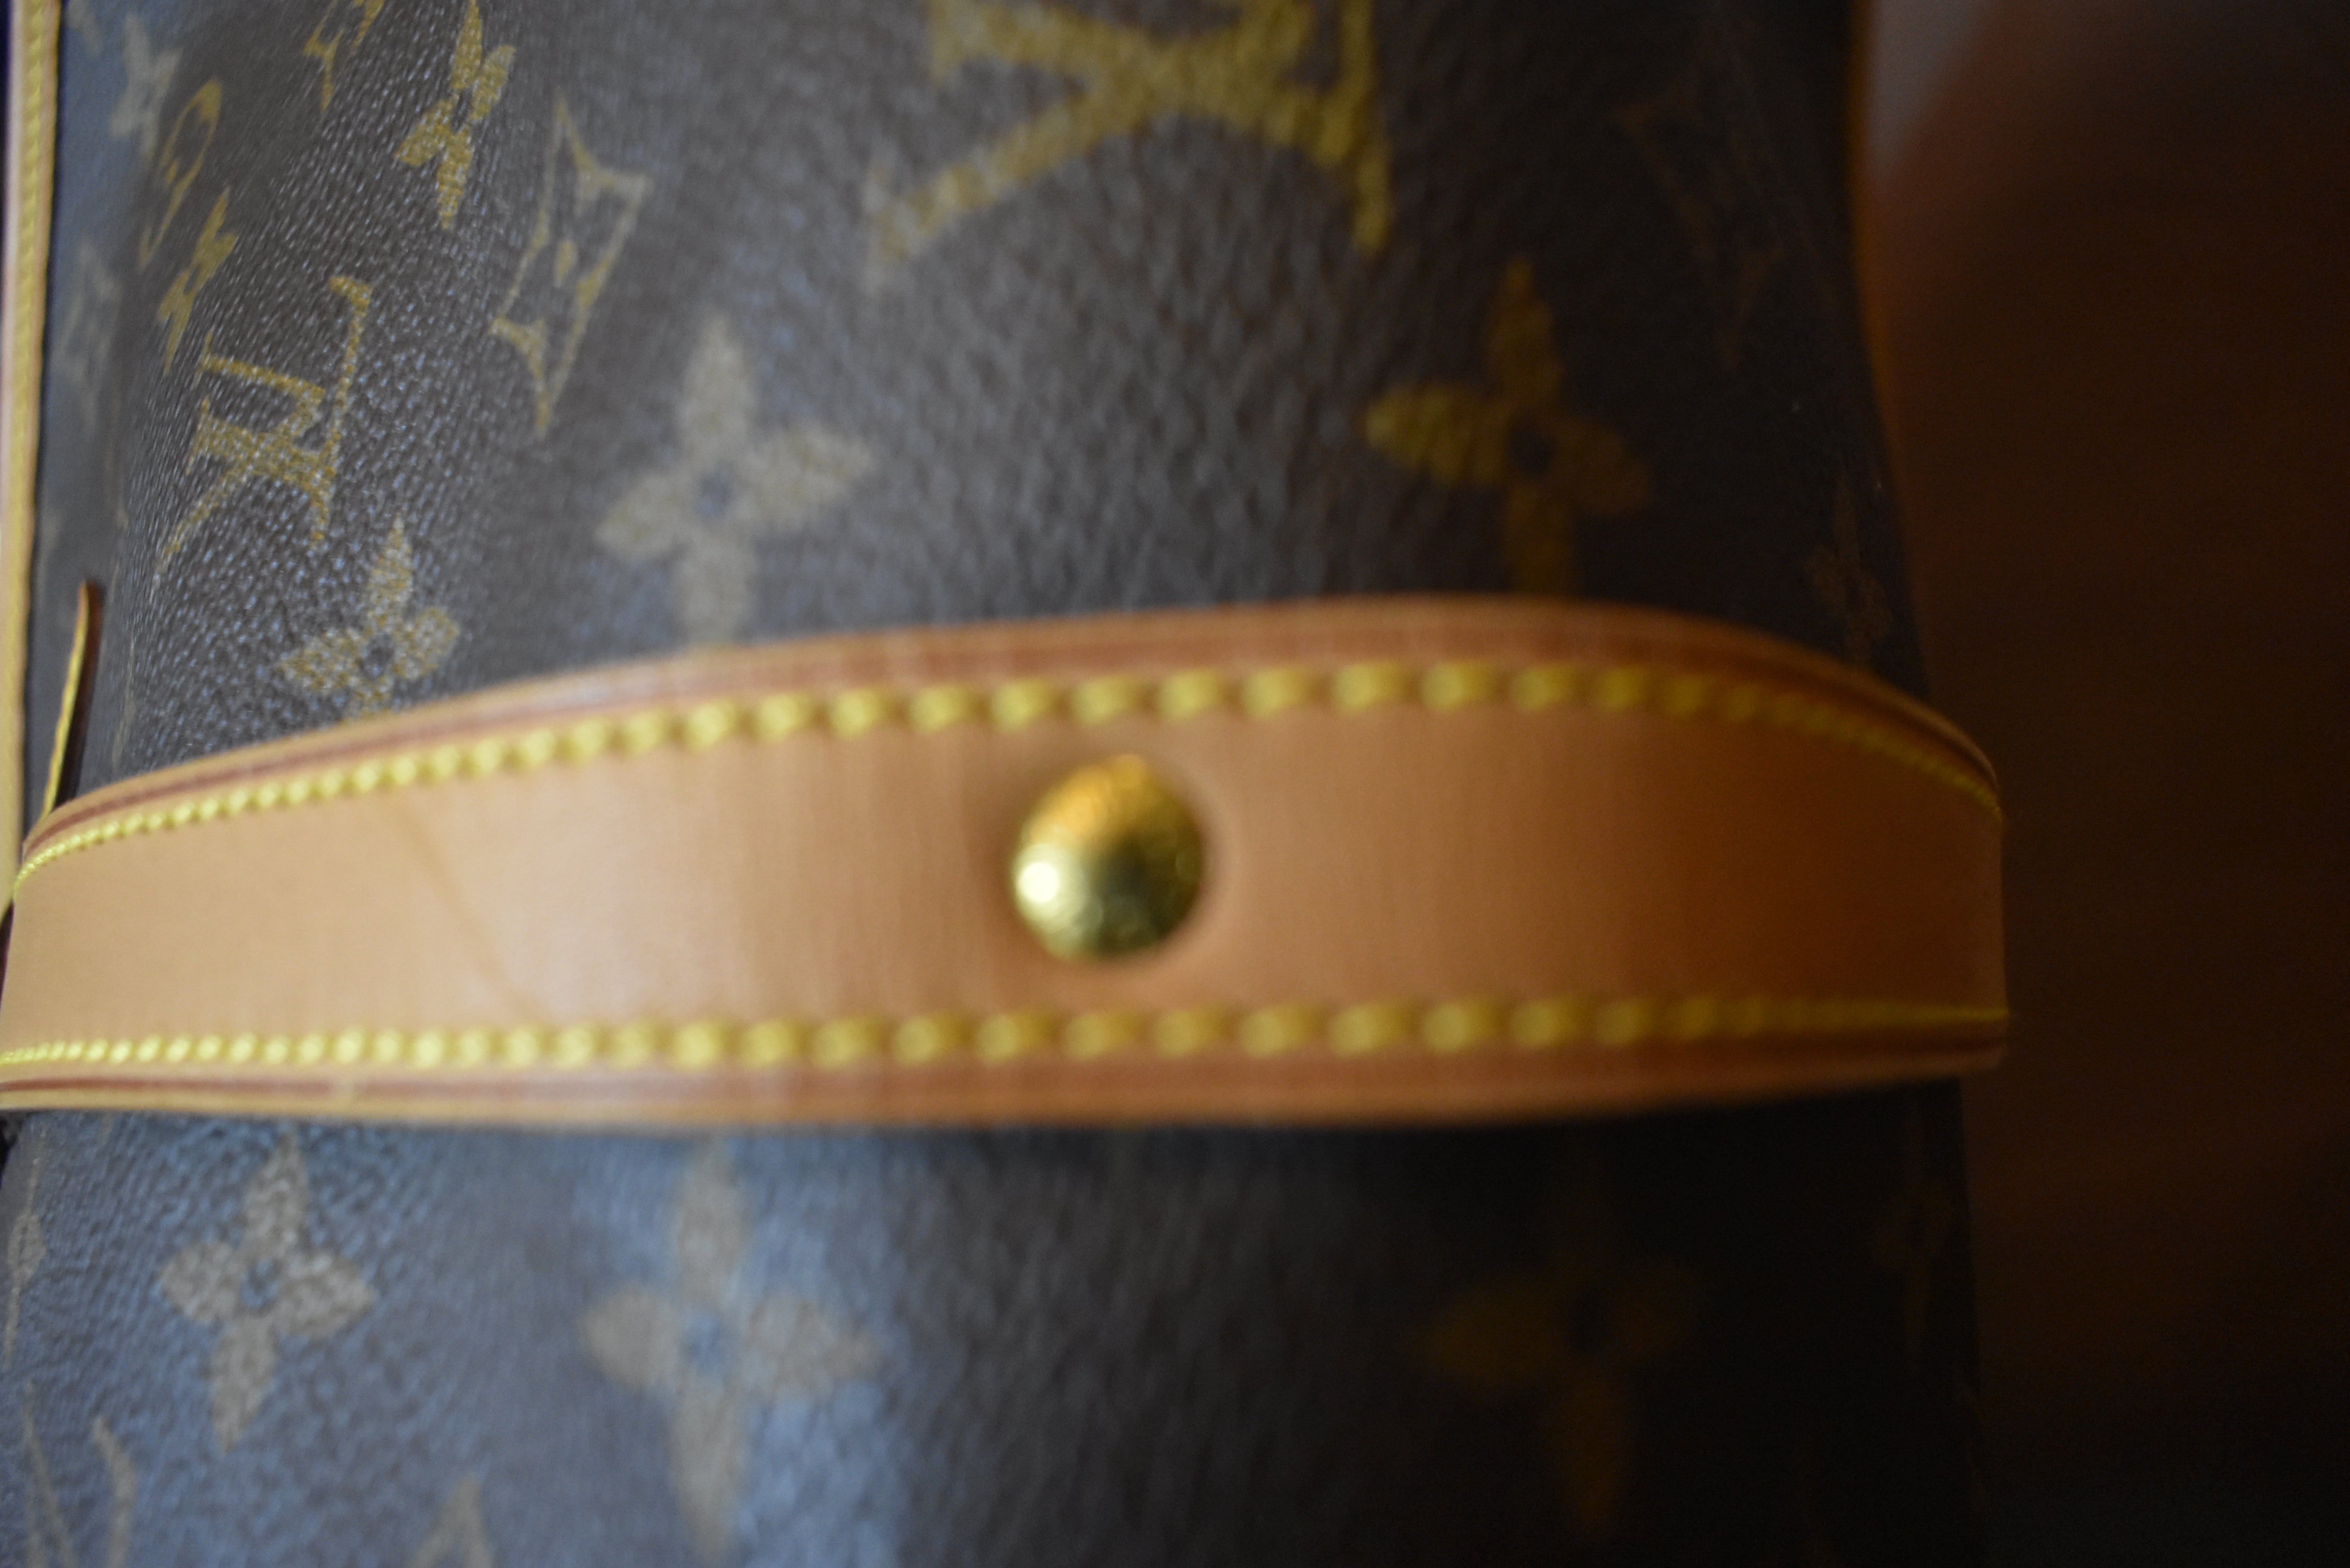 Louis Vuitton Messenger Shoulder bag 387535